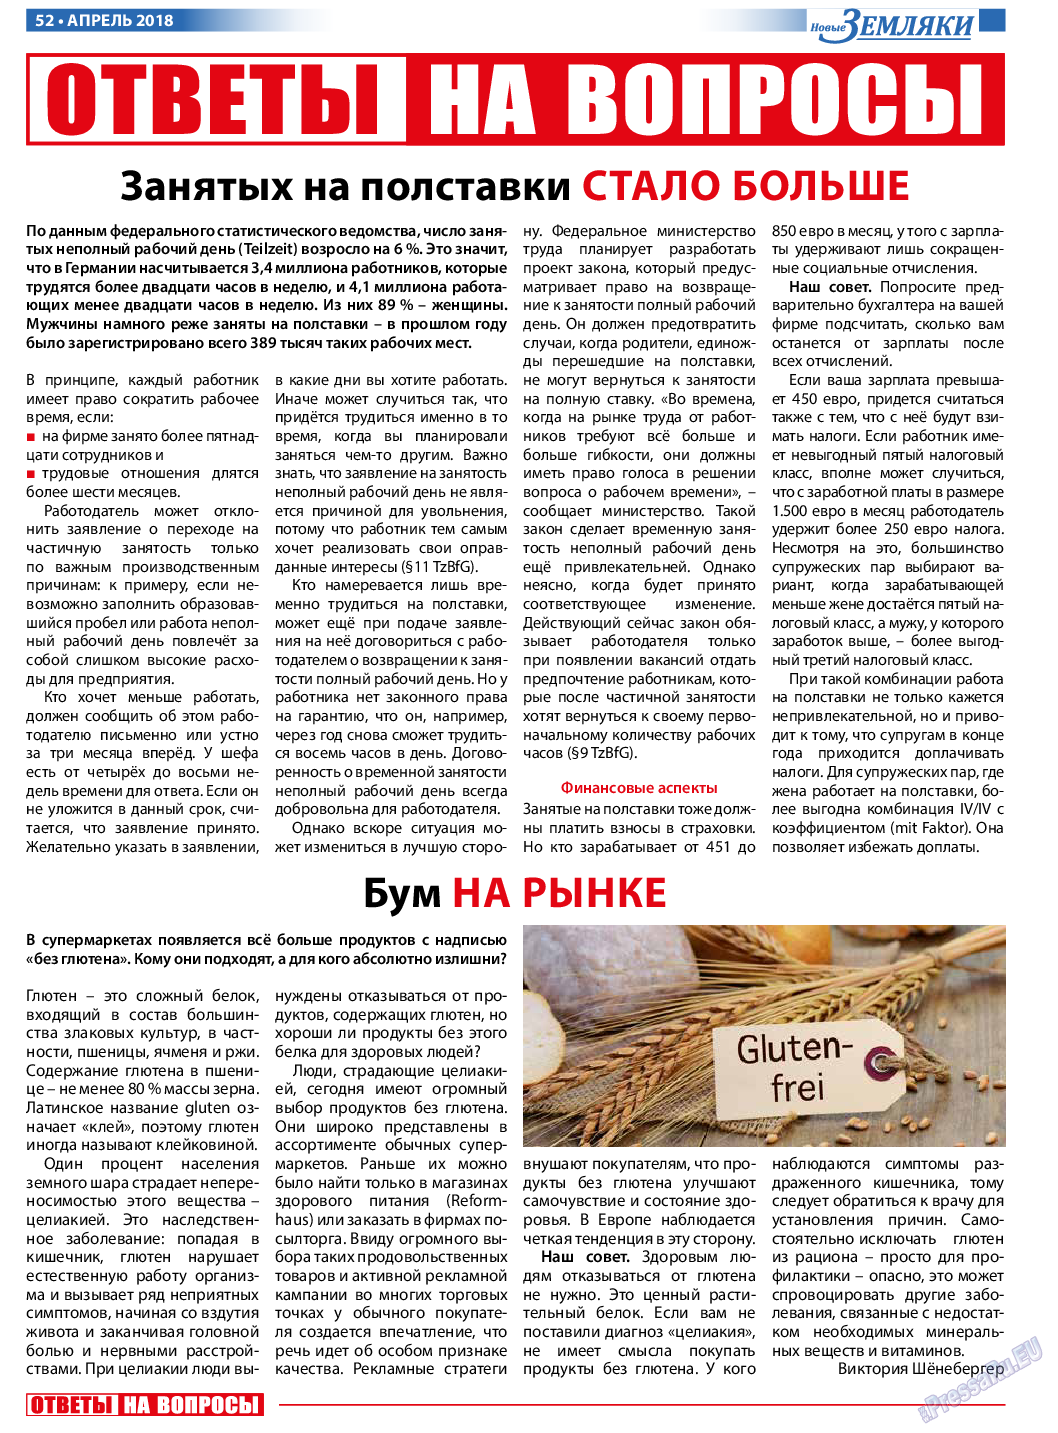 Новые Земляки, газета. 2018 №4 стр.52